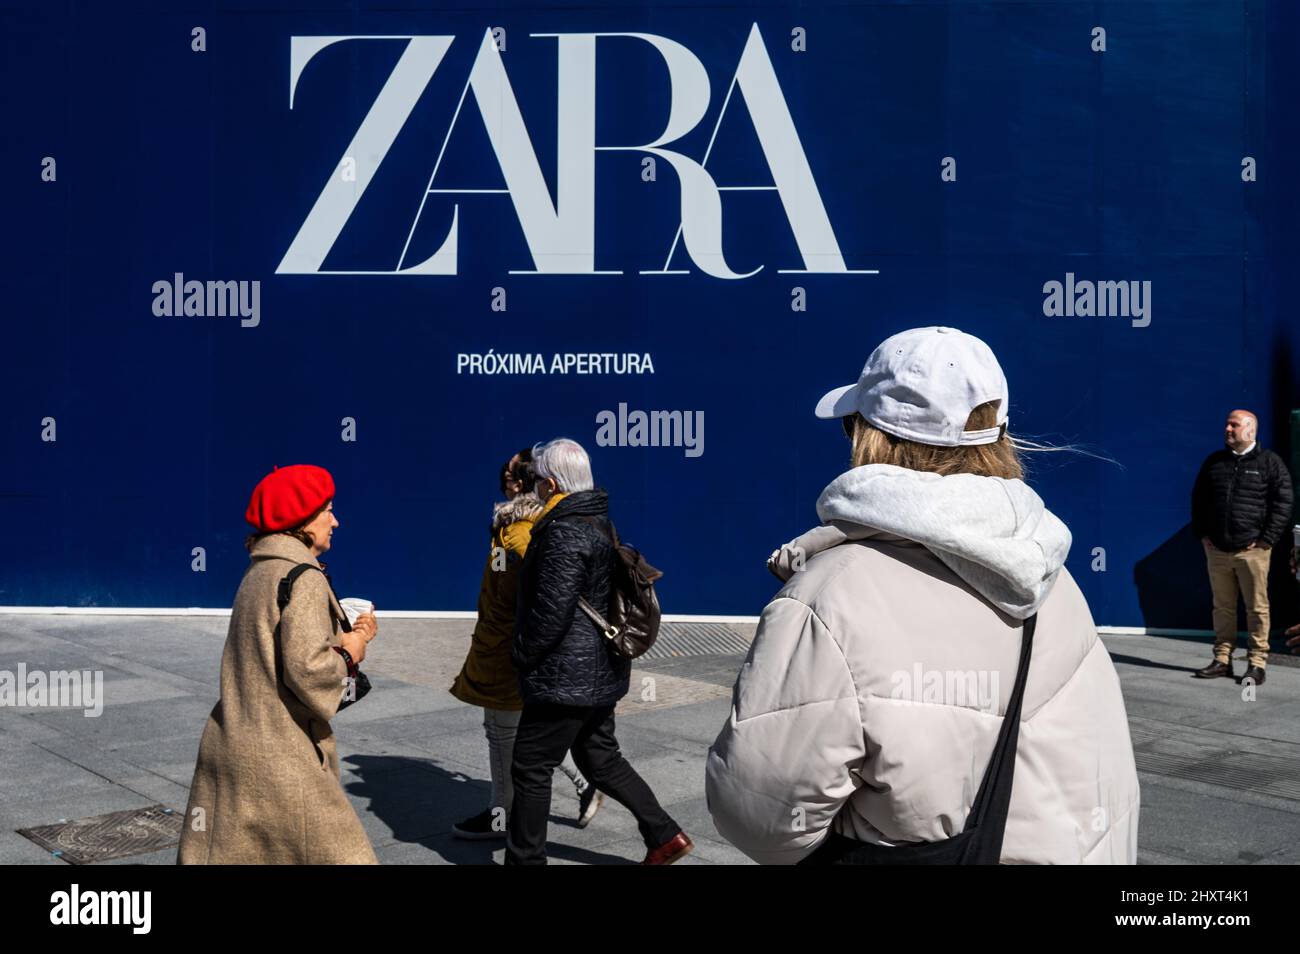 Die Leute kommen an einer Werbung für die bevorstehende Eröffnung eines Zara-Ladens vorbei. Die Geschäfte von Zara gehören zur Inditex-Gruppe, die sich im Besitz von Amancio Ortega befindet. Stockfoto